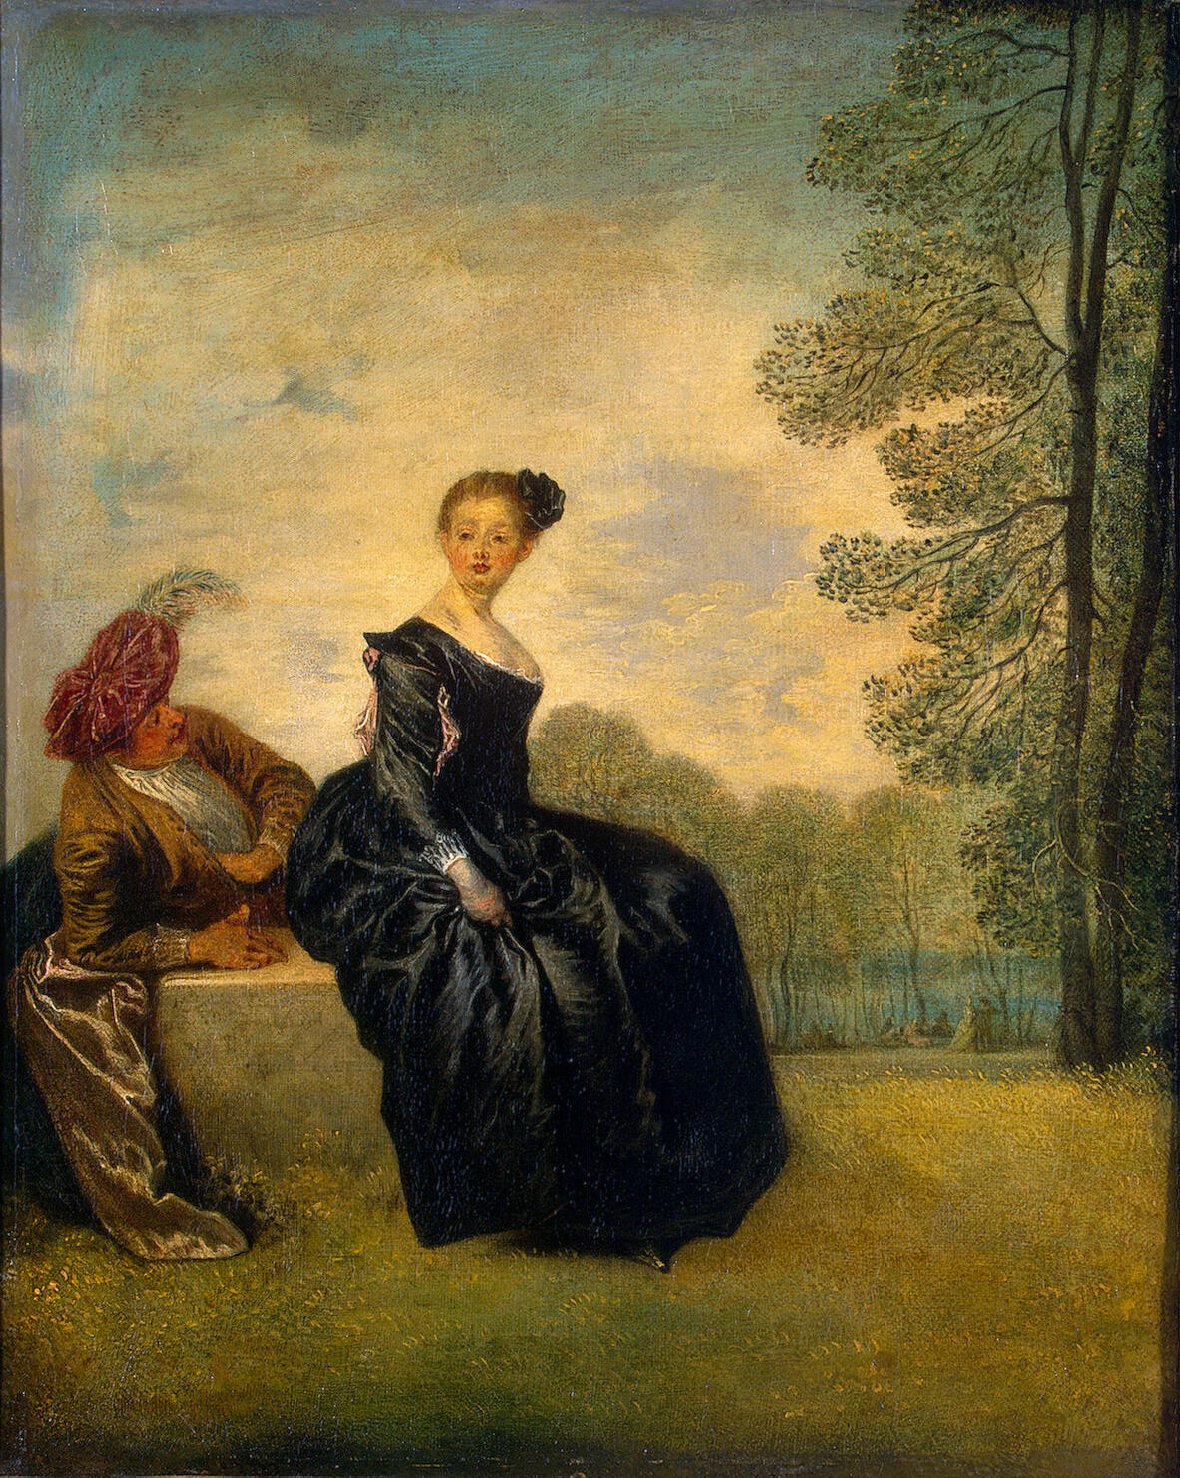 La Fille capricieuse by Antoine Watteau - v. 1718 - 42 x 134 cm Musée de l'Ermitage